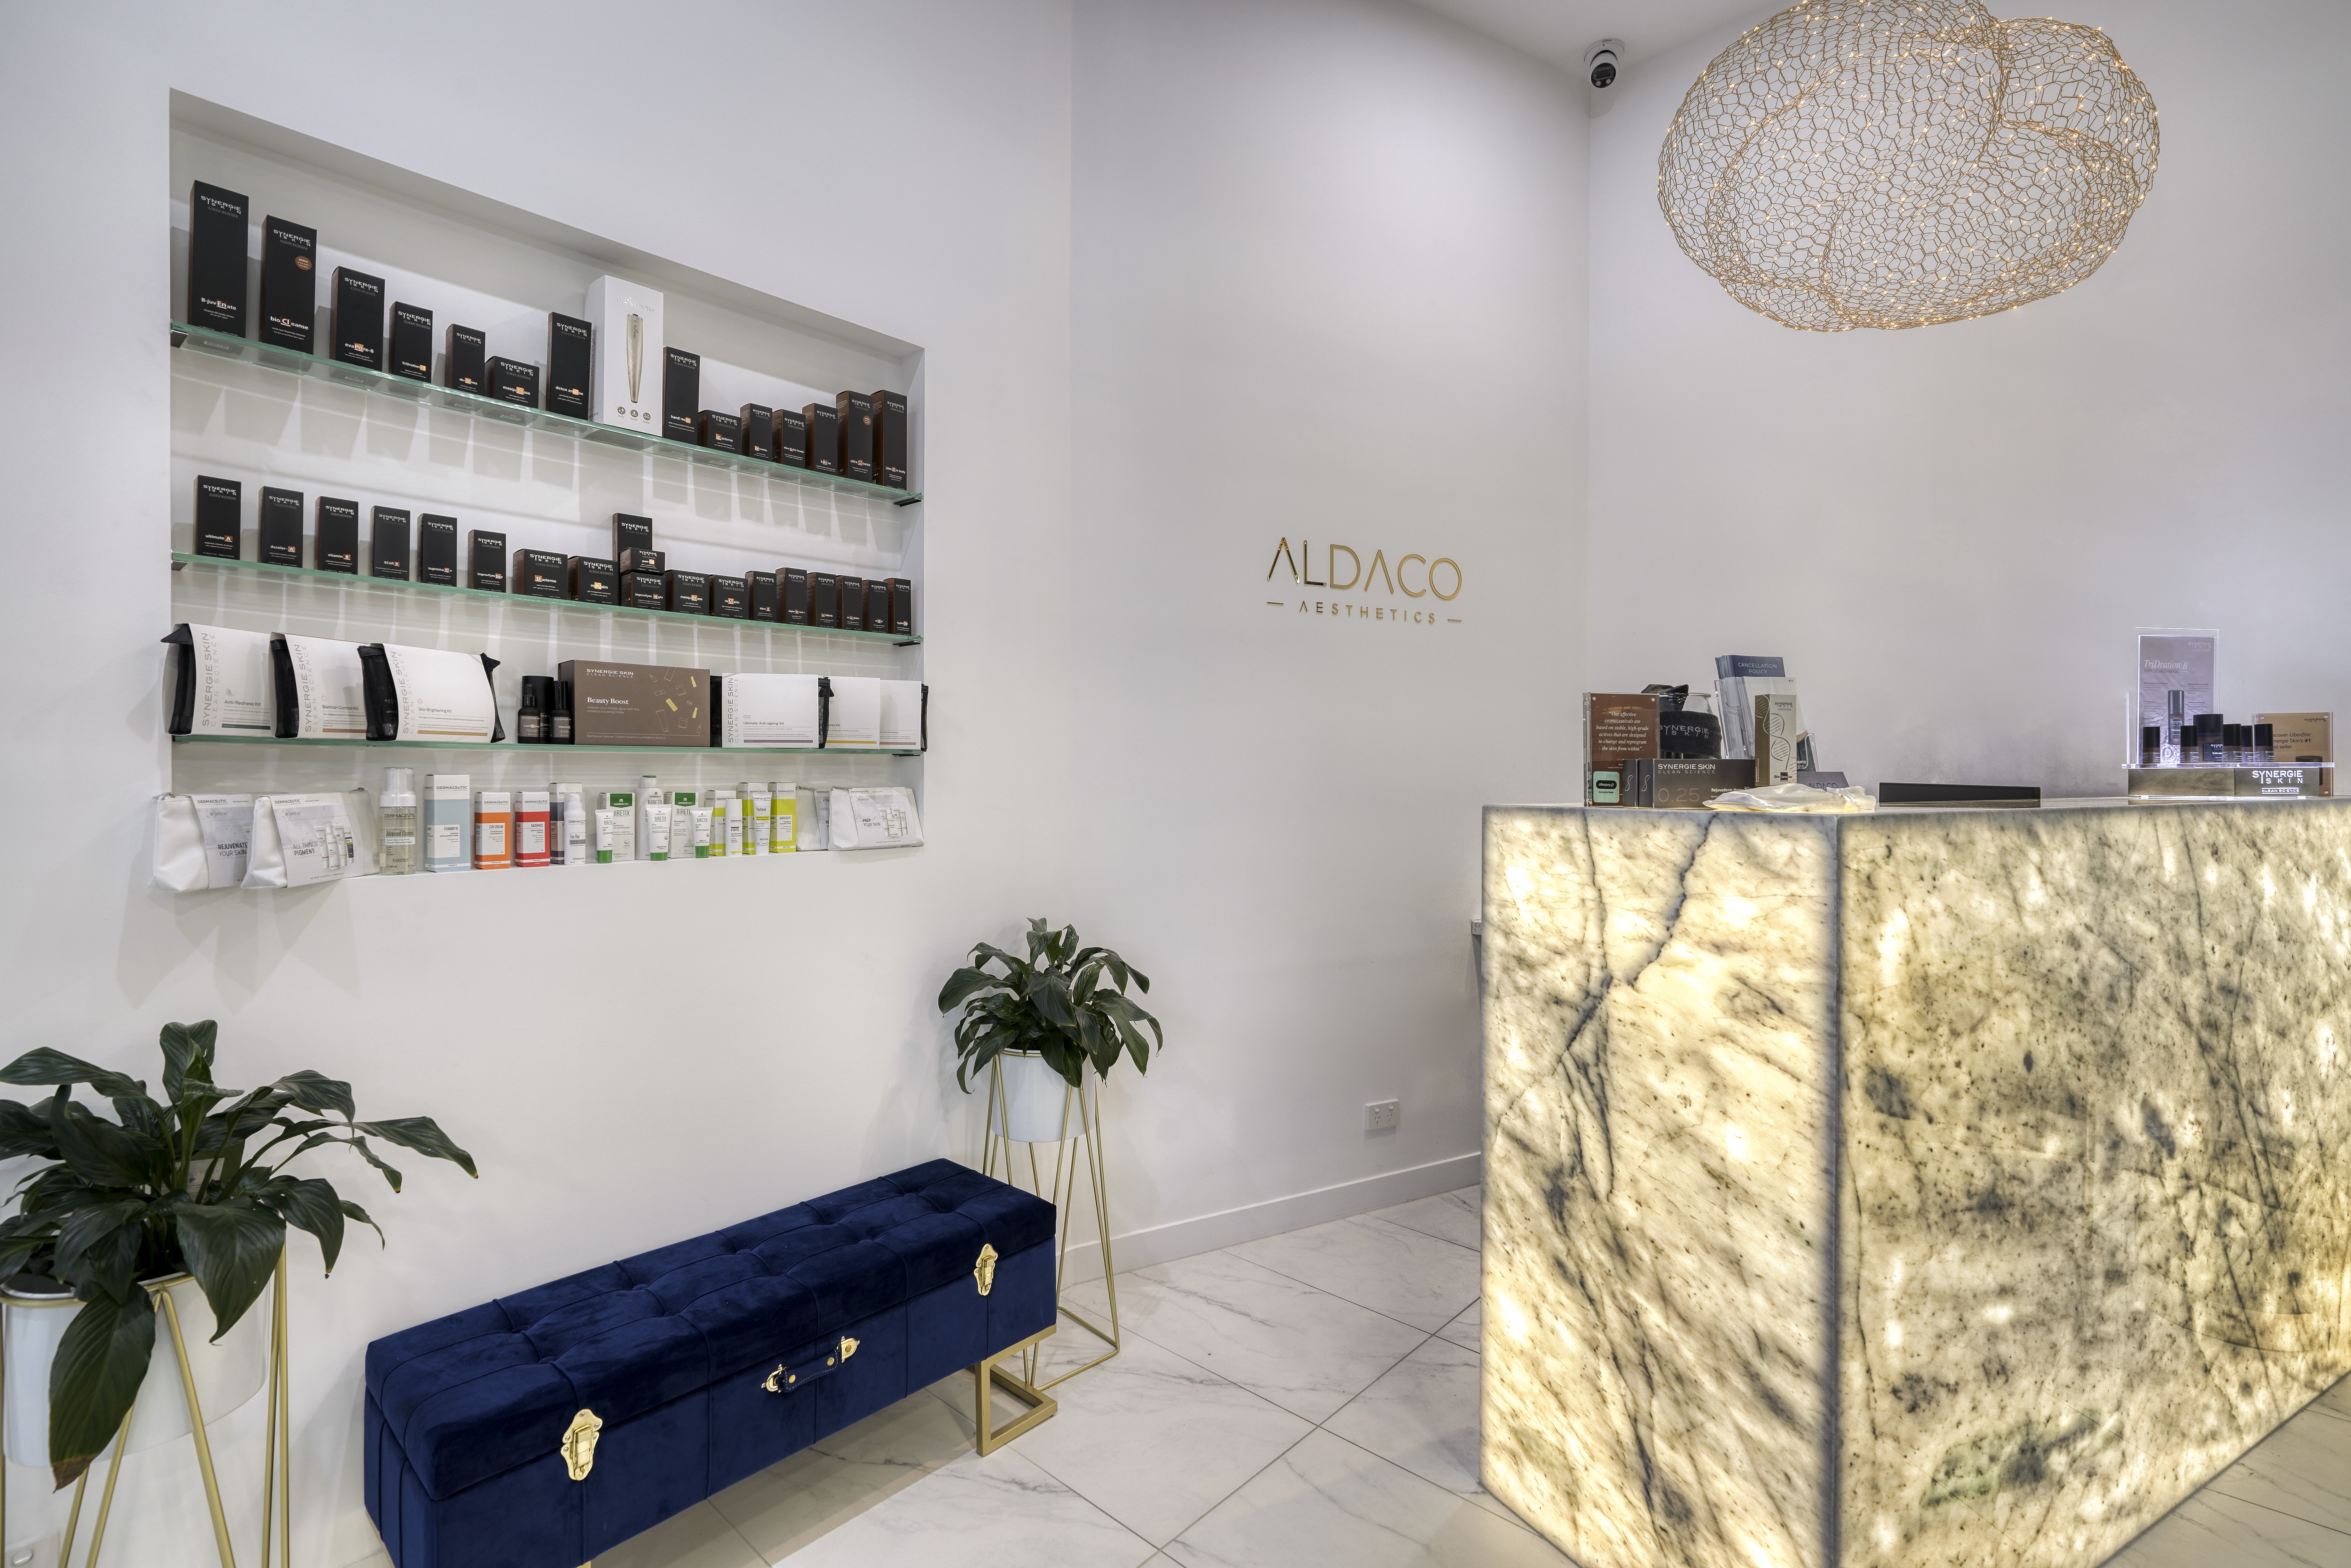 Aldaco Aesthetics - Coburg, AU, care about skin